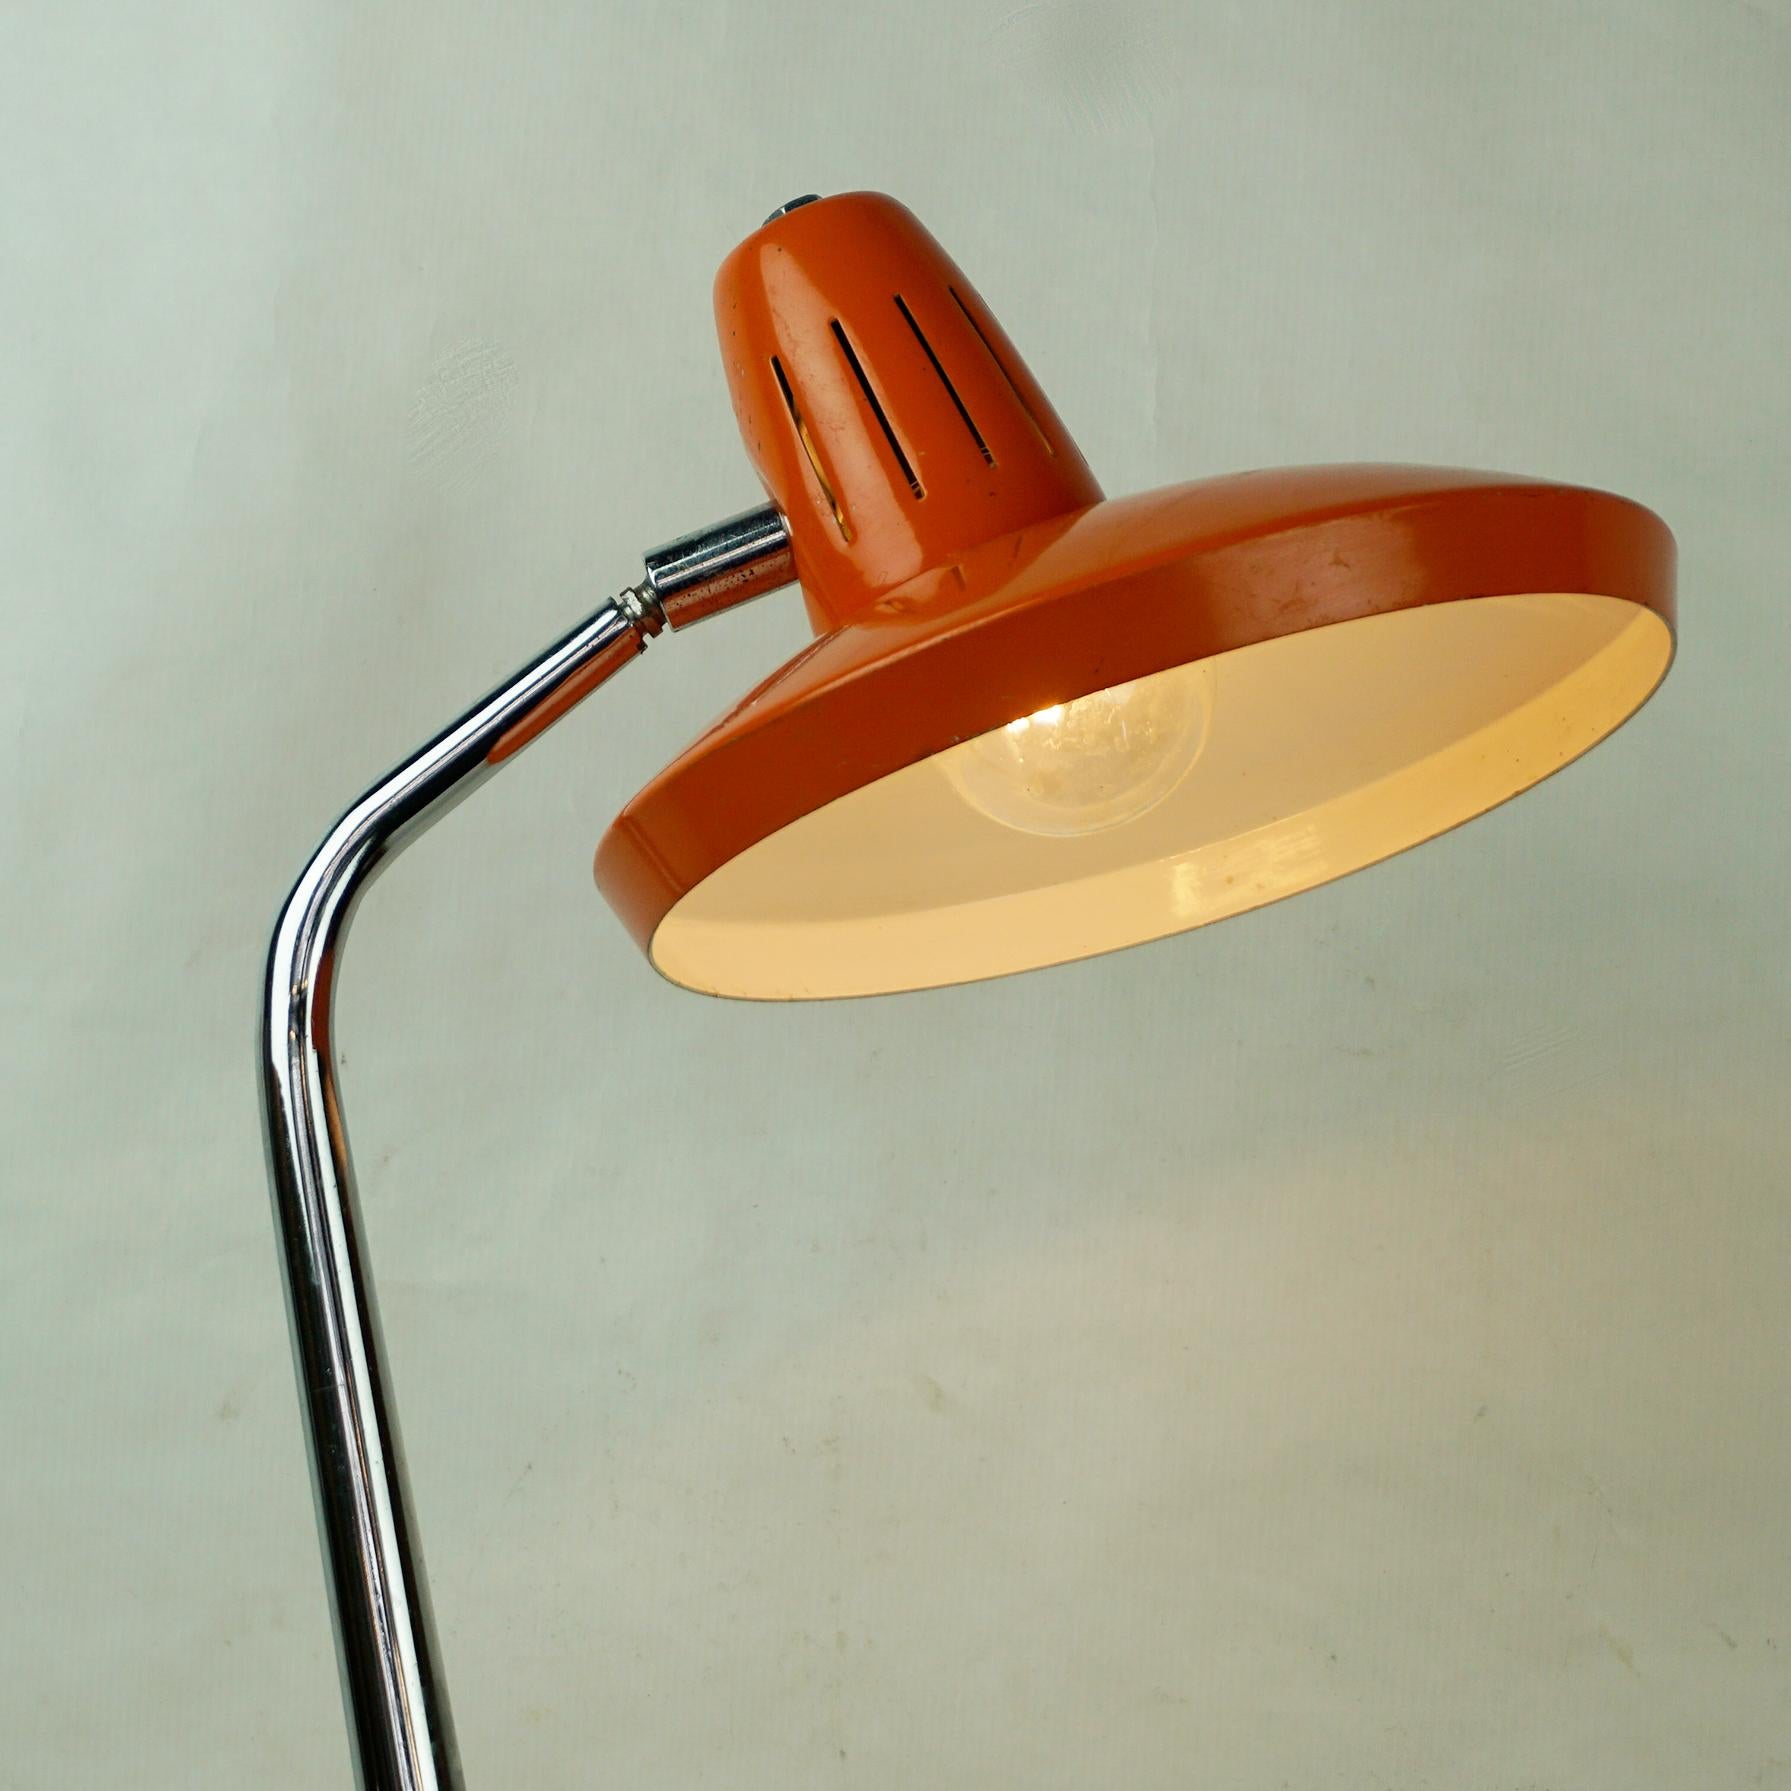 Metal Orange Midcentury Adjustable Desk or Table Lamp by Fase Madrid Spain